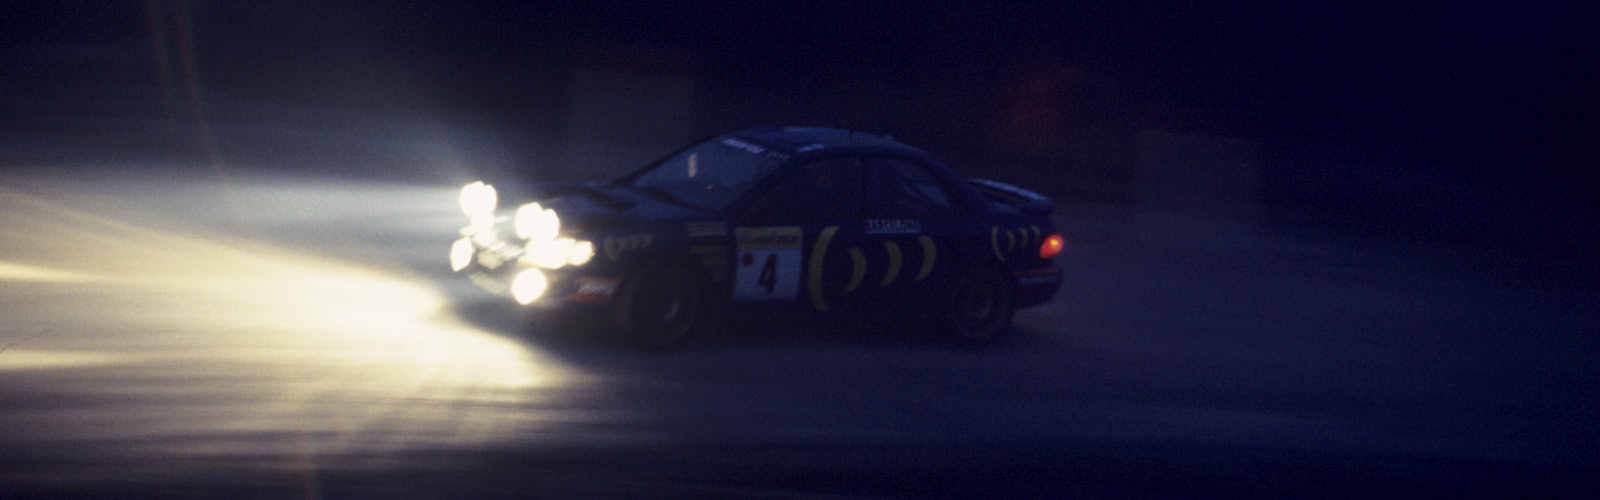 Colin McRae Subaru 1995 Monte Carlo Rally WRC